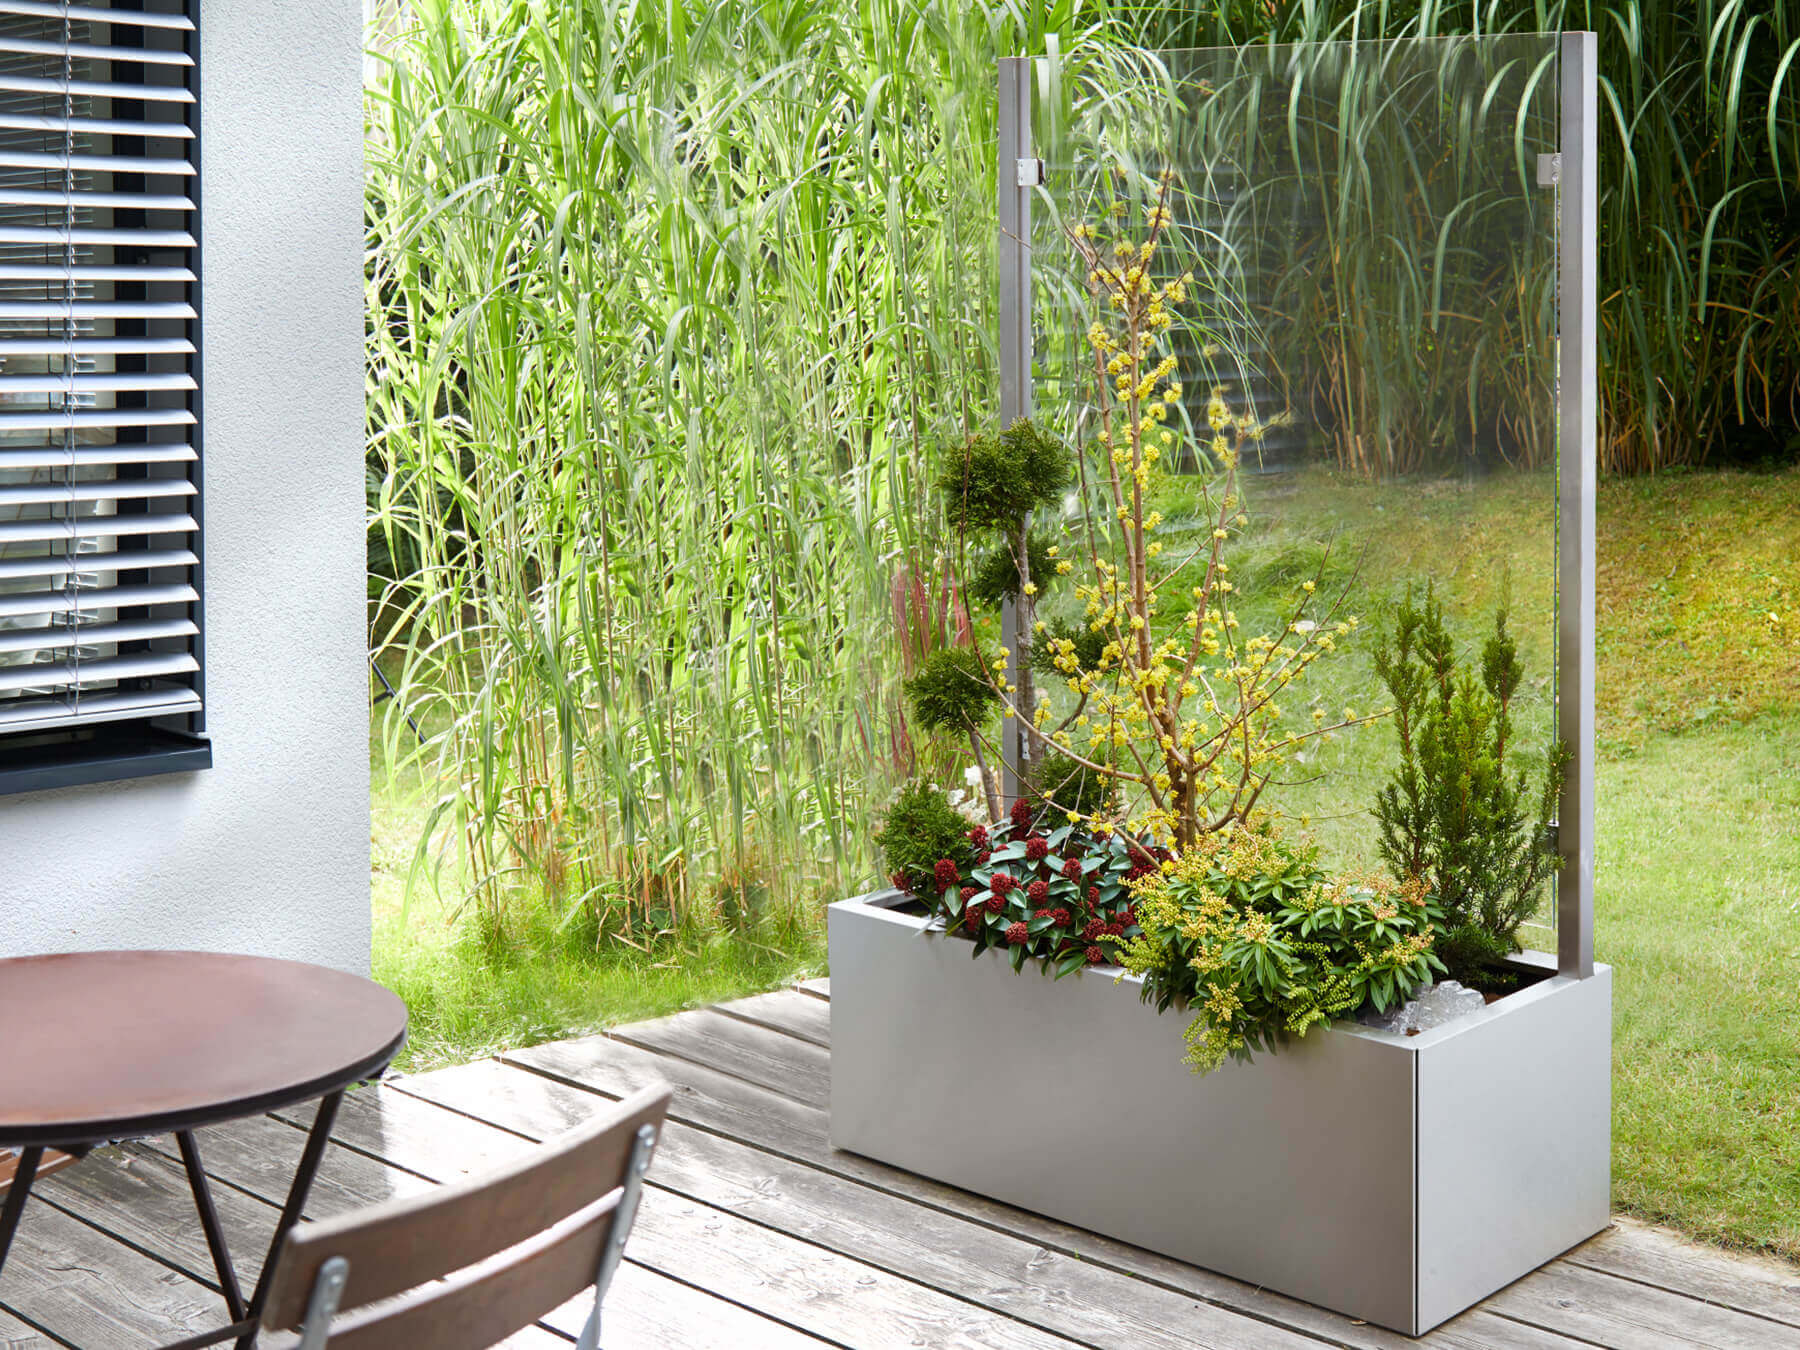 Bepflanzter Pflanzkasten mit Wind- und Sichtschutz auf Terrasse